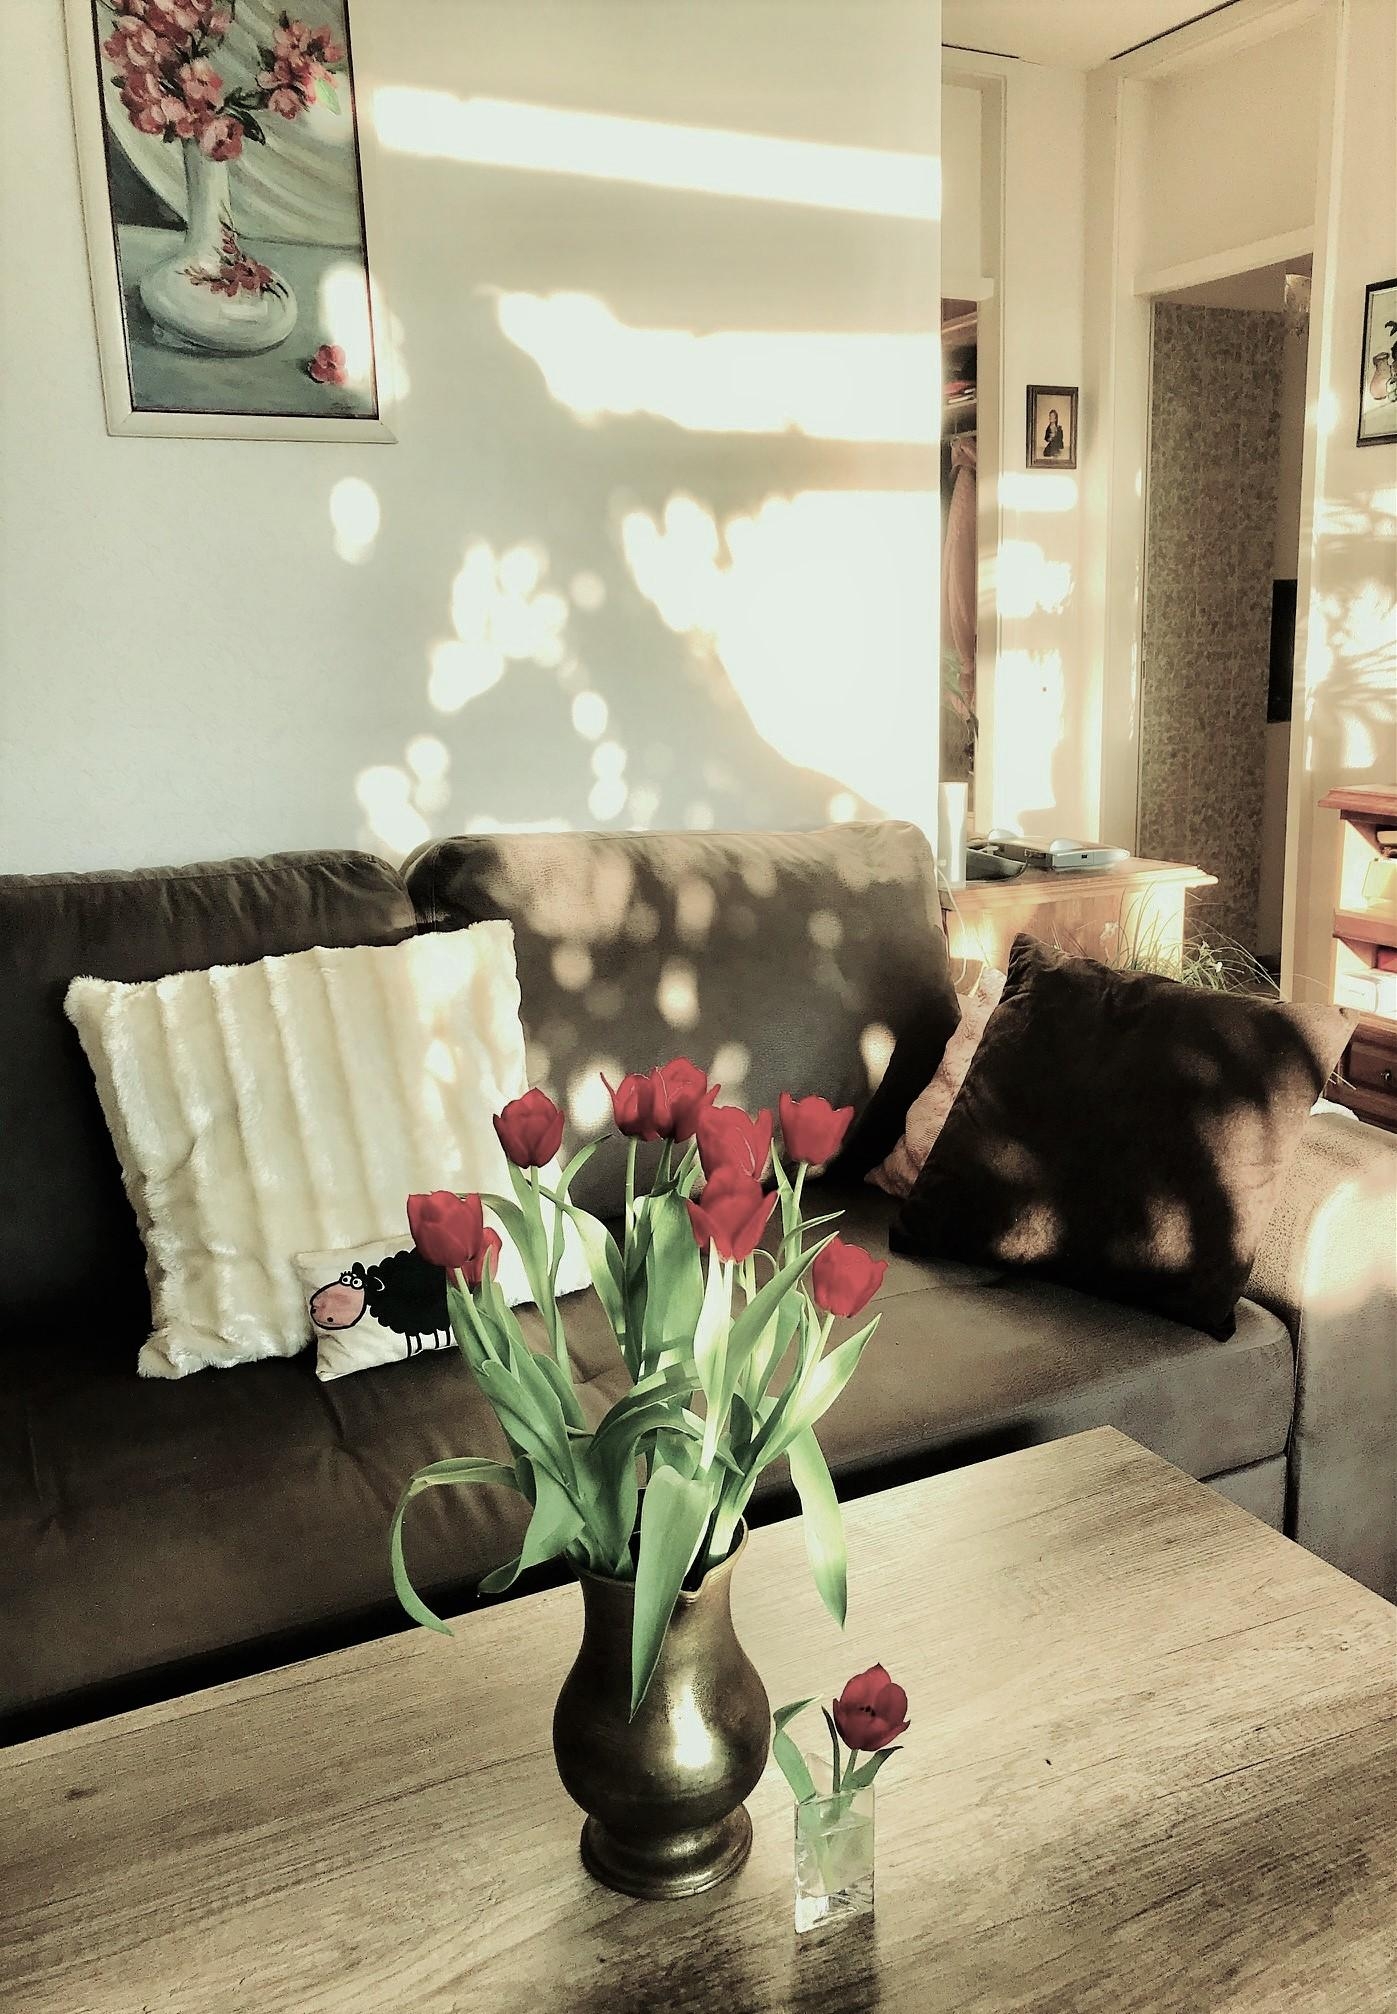 Heute war das #wohnzimmer sonnendurchflutet :)
 #couch #licht #home ##freshflowerfriday